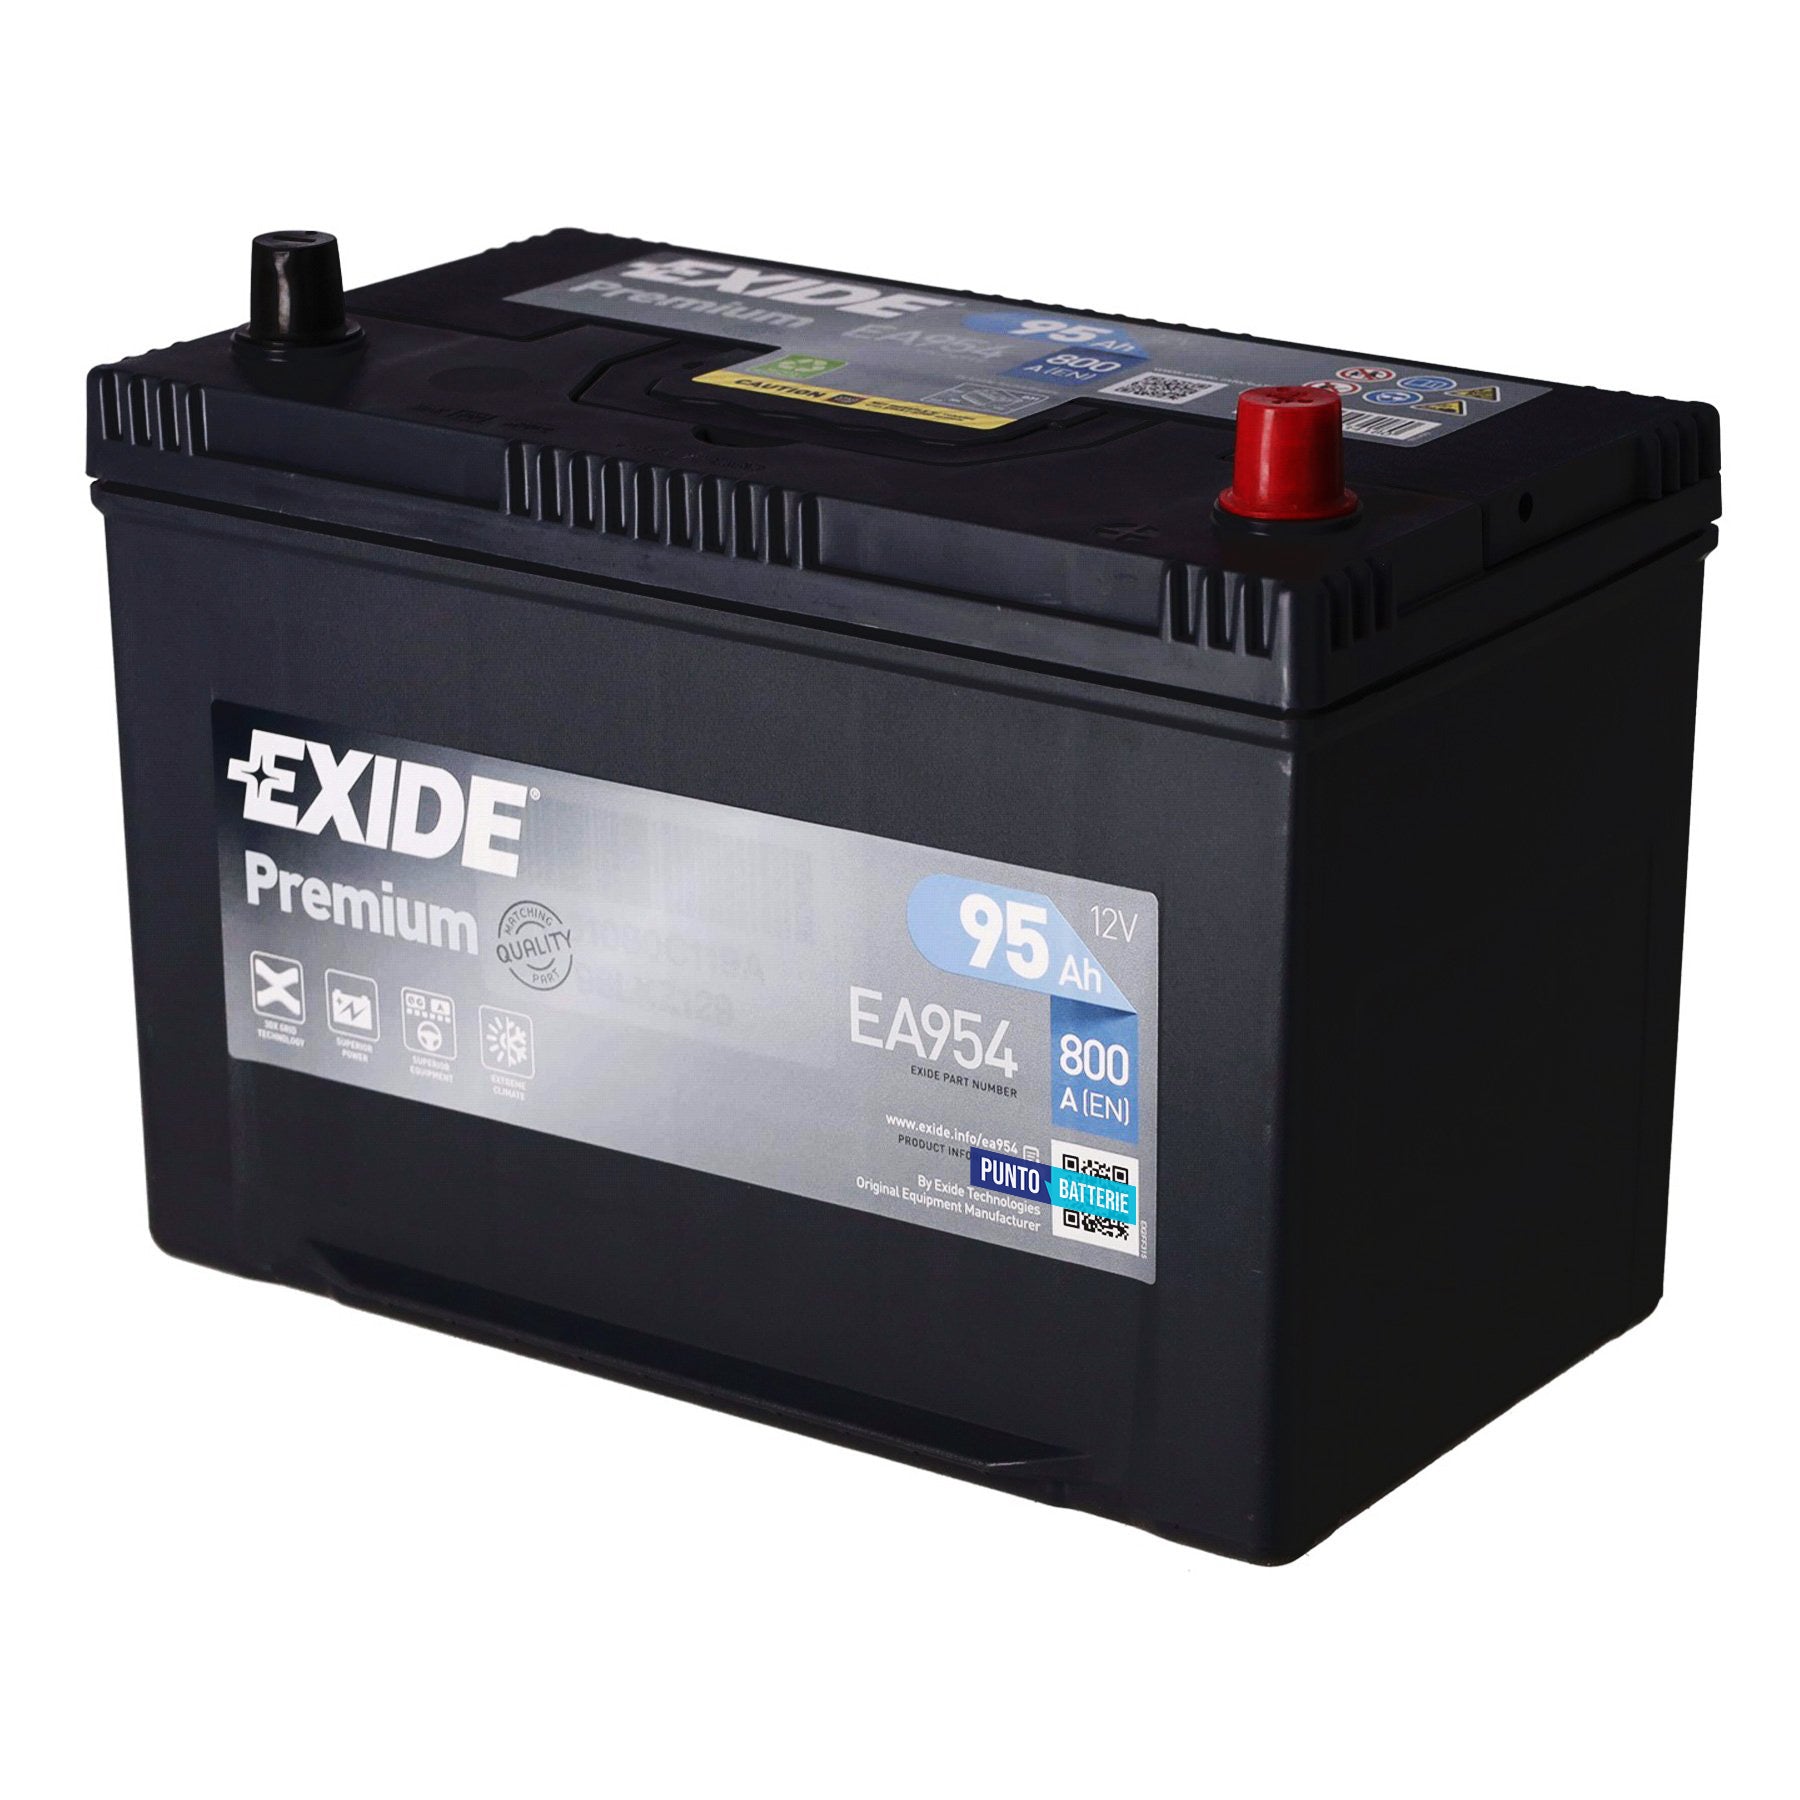 Batteria originale Exide Premium EA954, dimensioni 306 x 173 x 222, polo positivo a destra, 12 volt, 95 amperora, 800 ampere. Batteria per auto e veicoli leggeri.